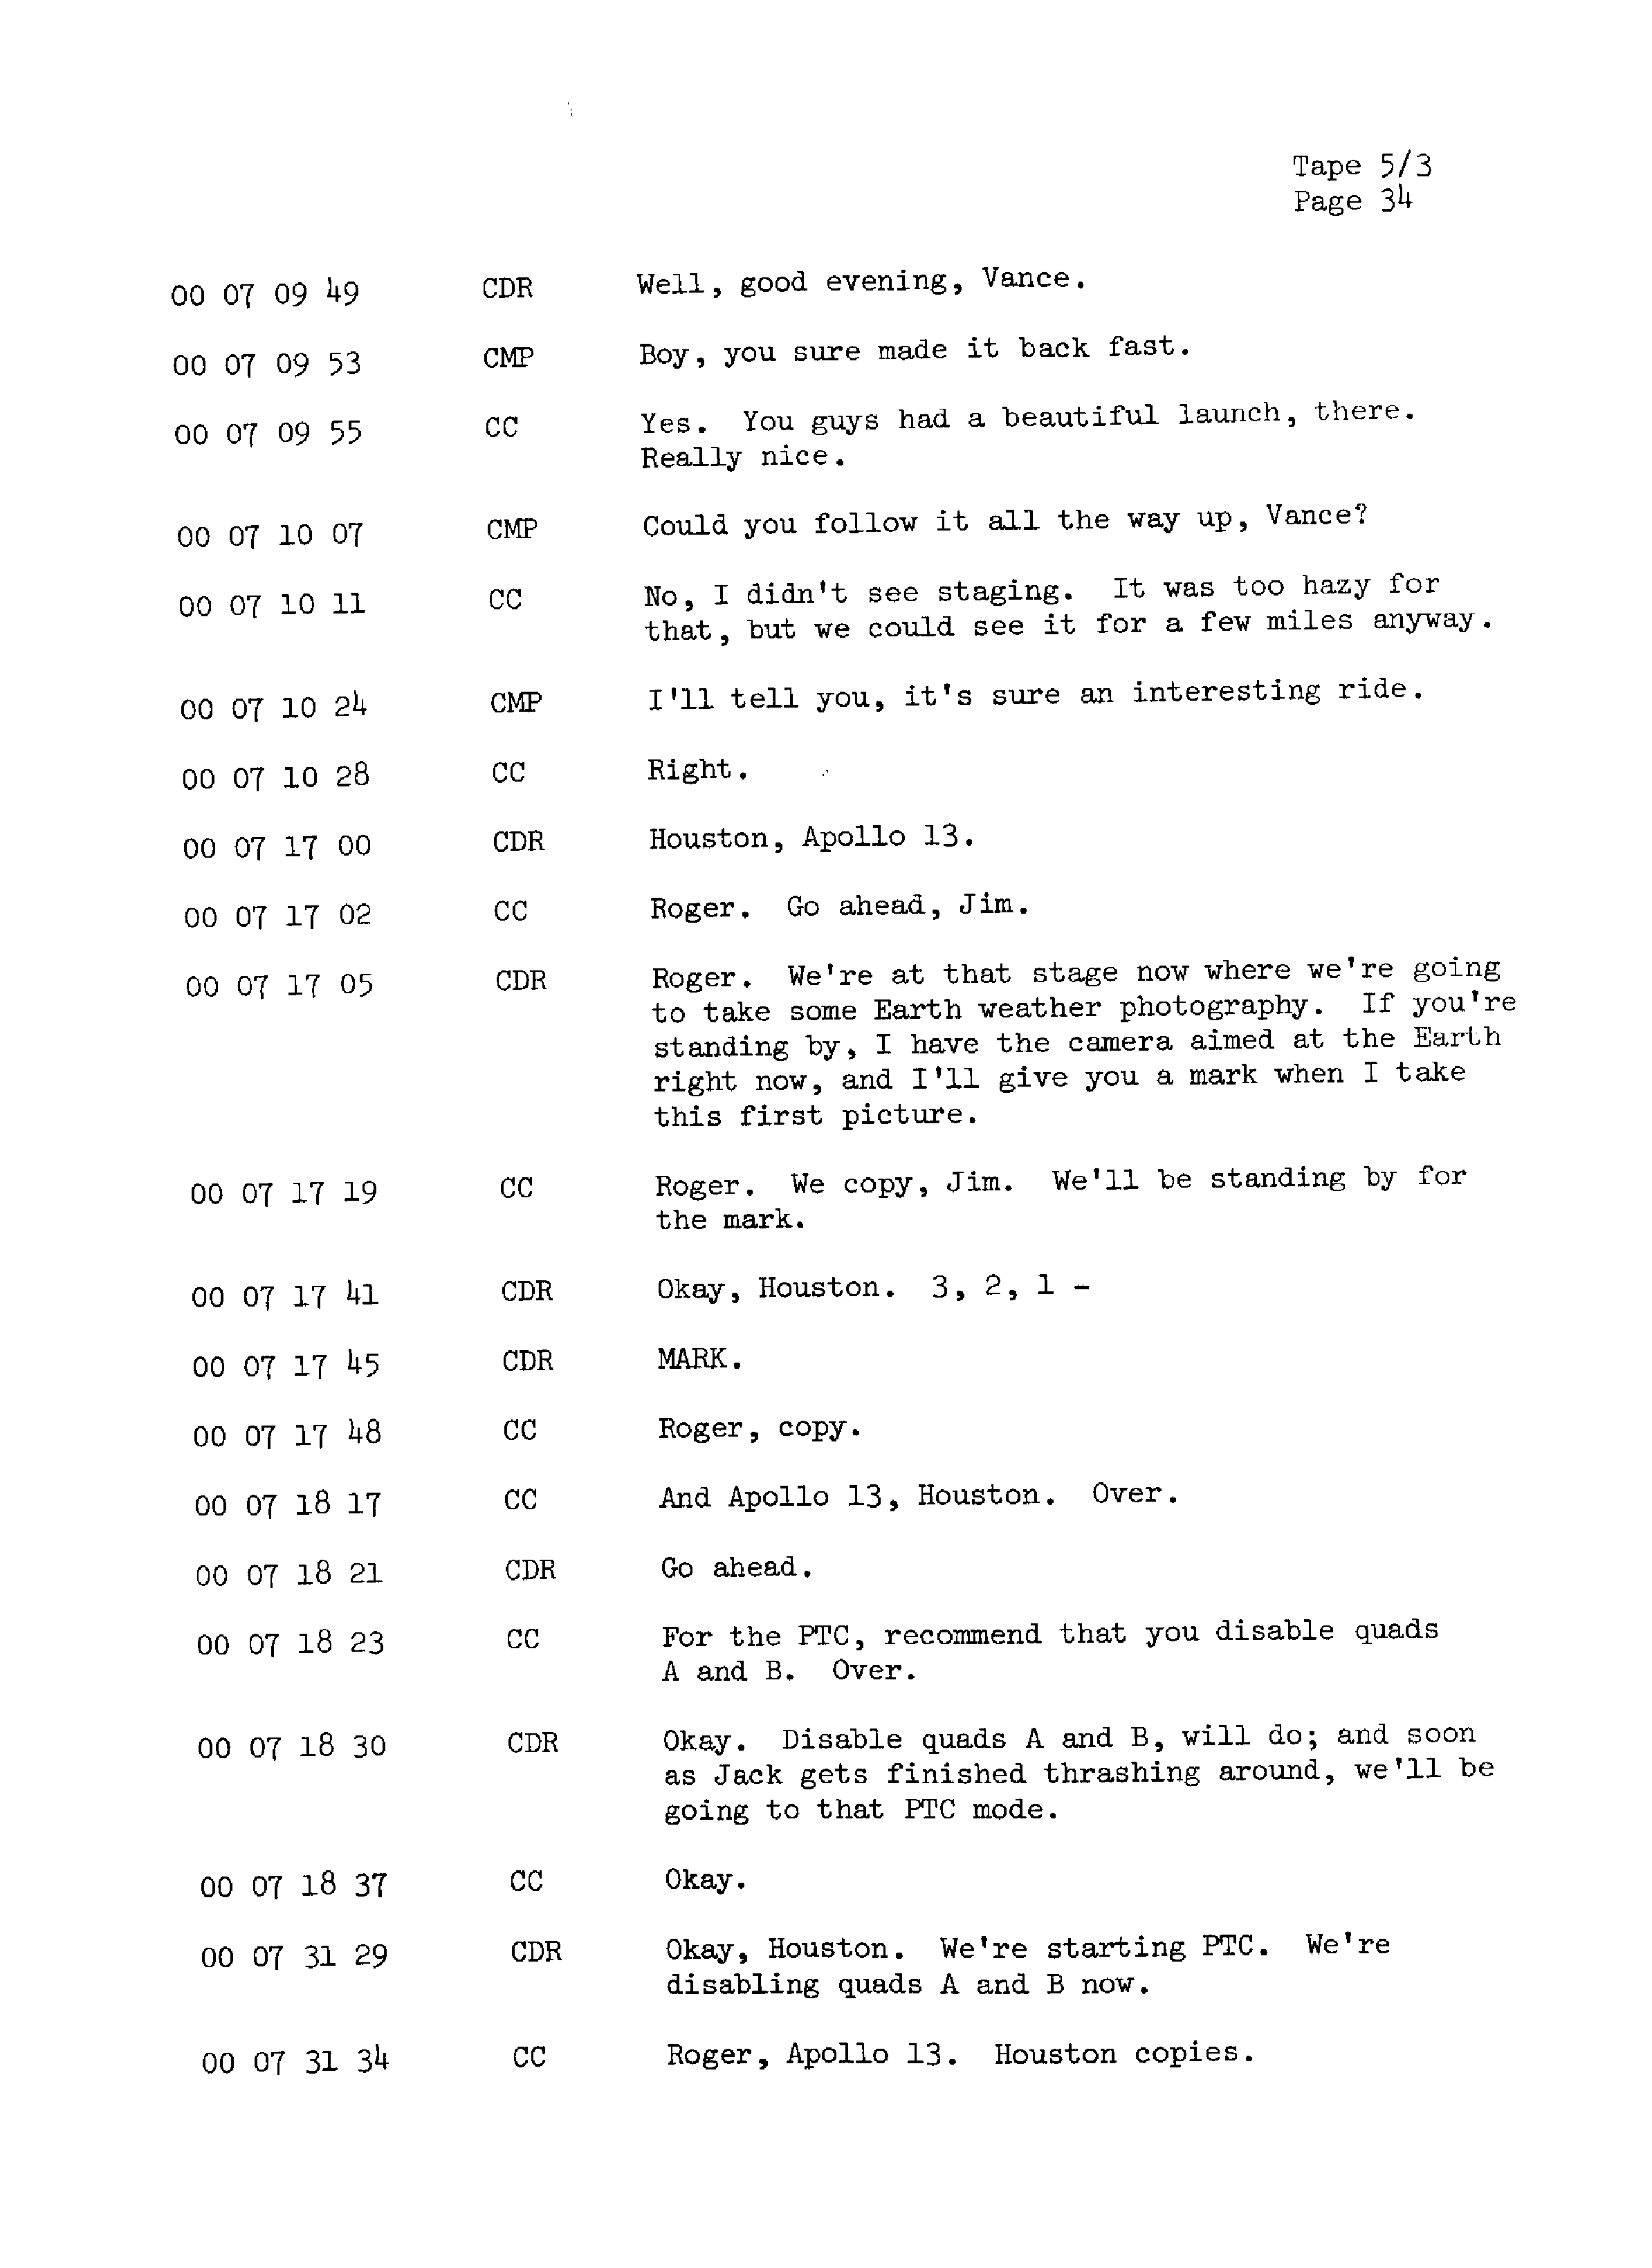 Page 41 of Apollo 13’s original transcript